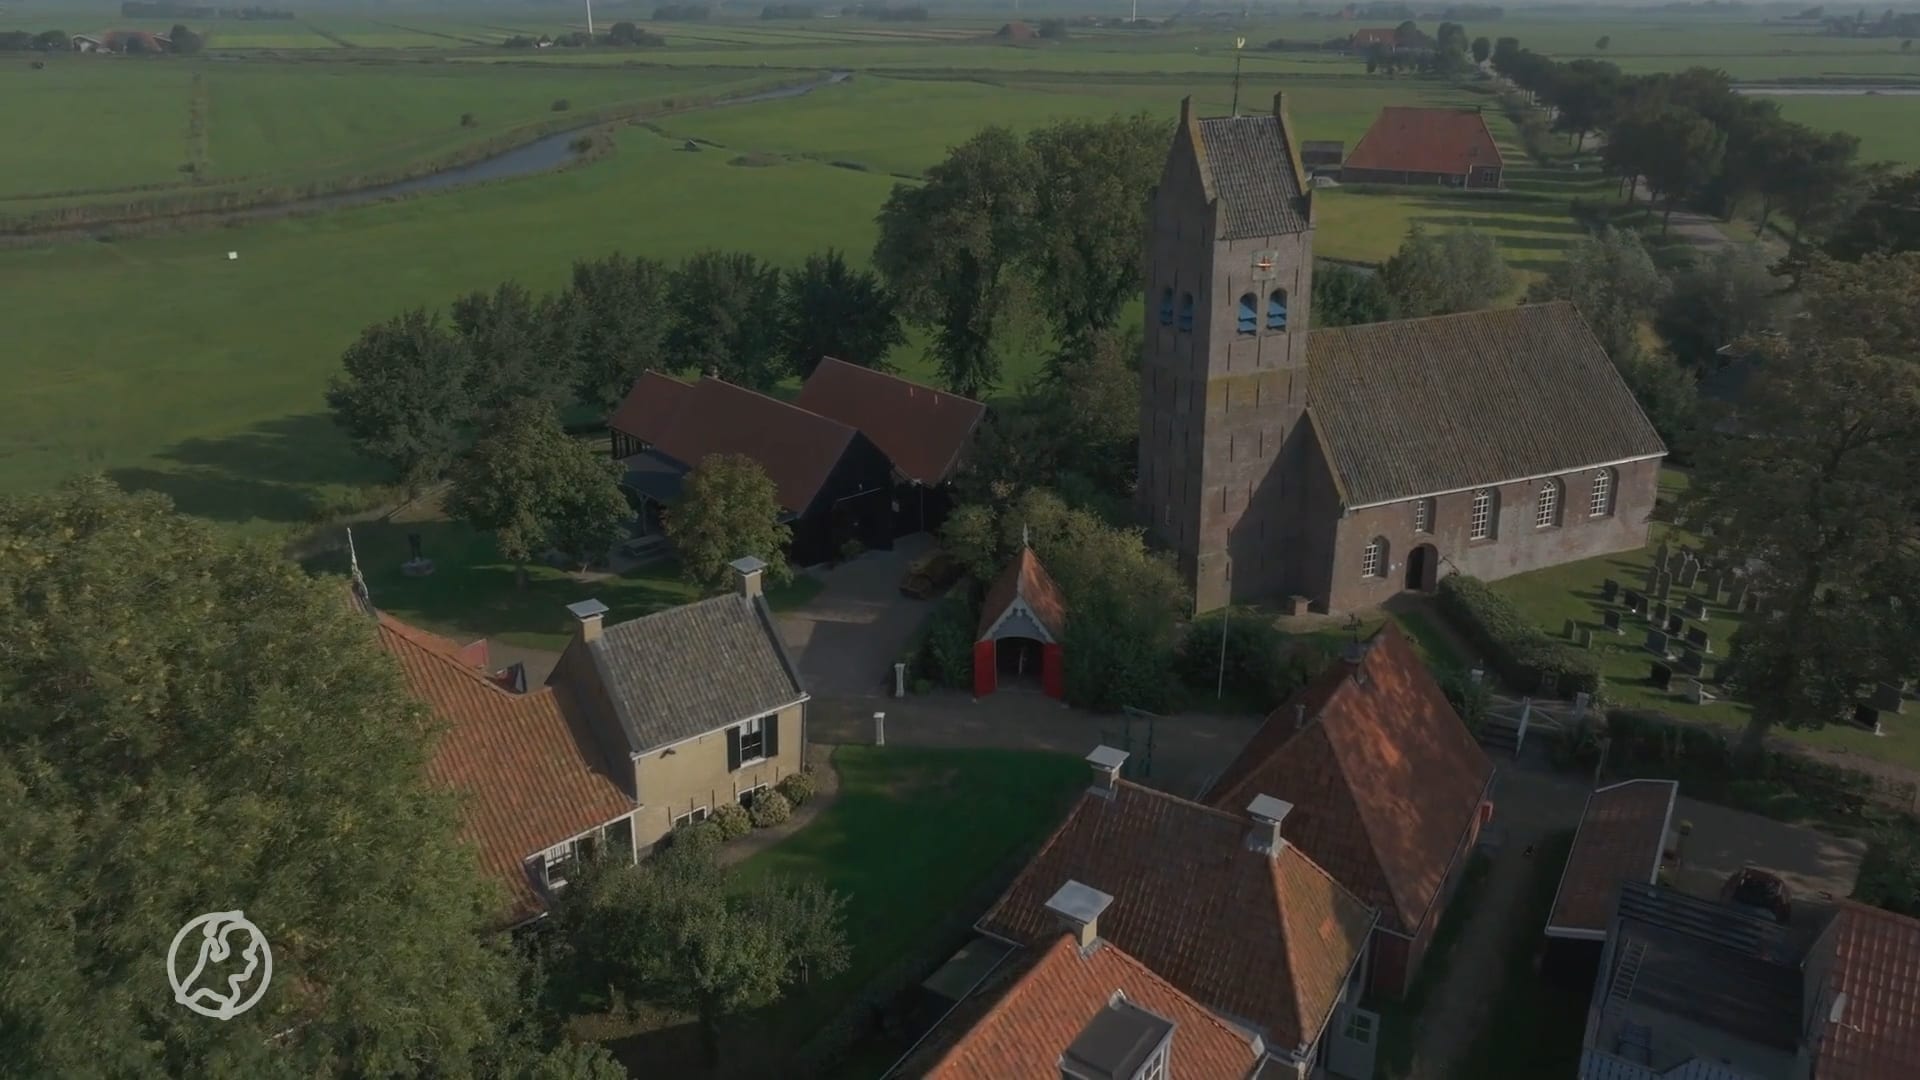 Fries dorp dat te koop staat, trekt veel bekijks: 'Vrienden willen daar samenwonen'